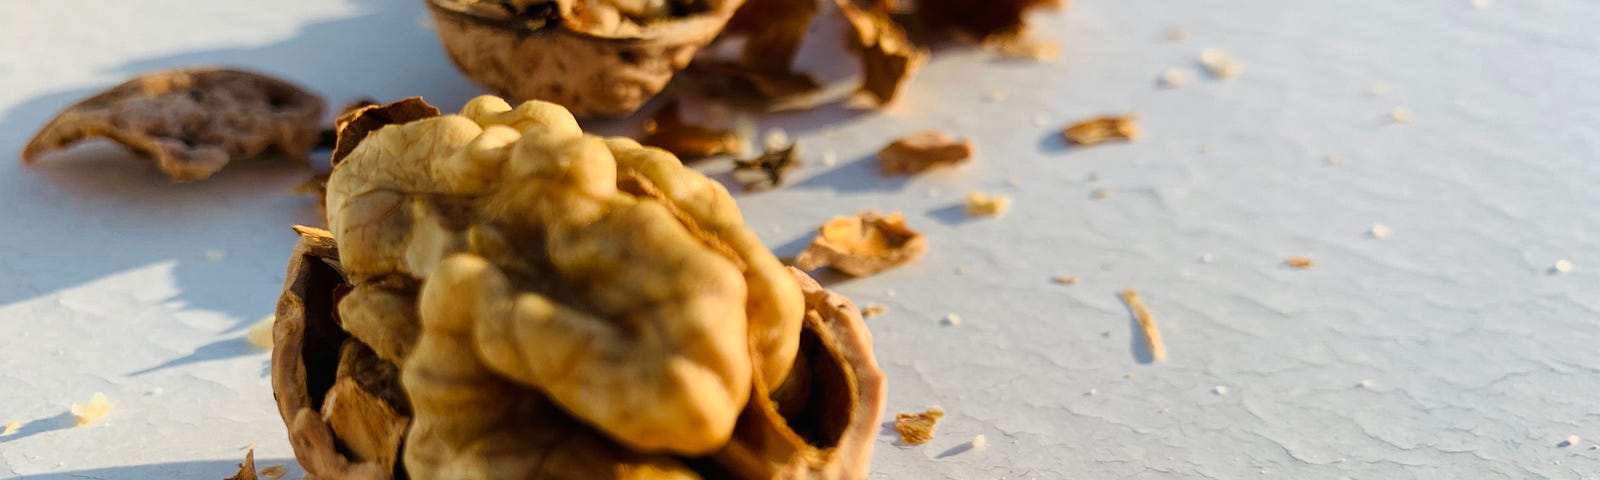 walnut shell and seeds